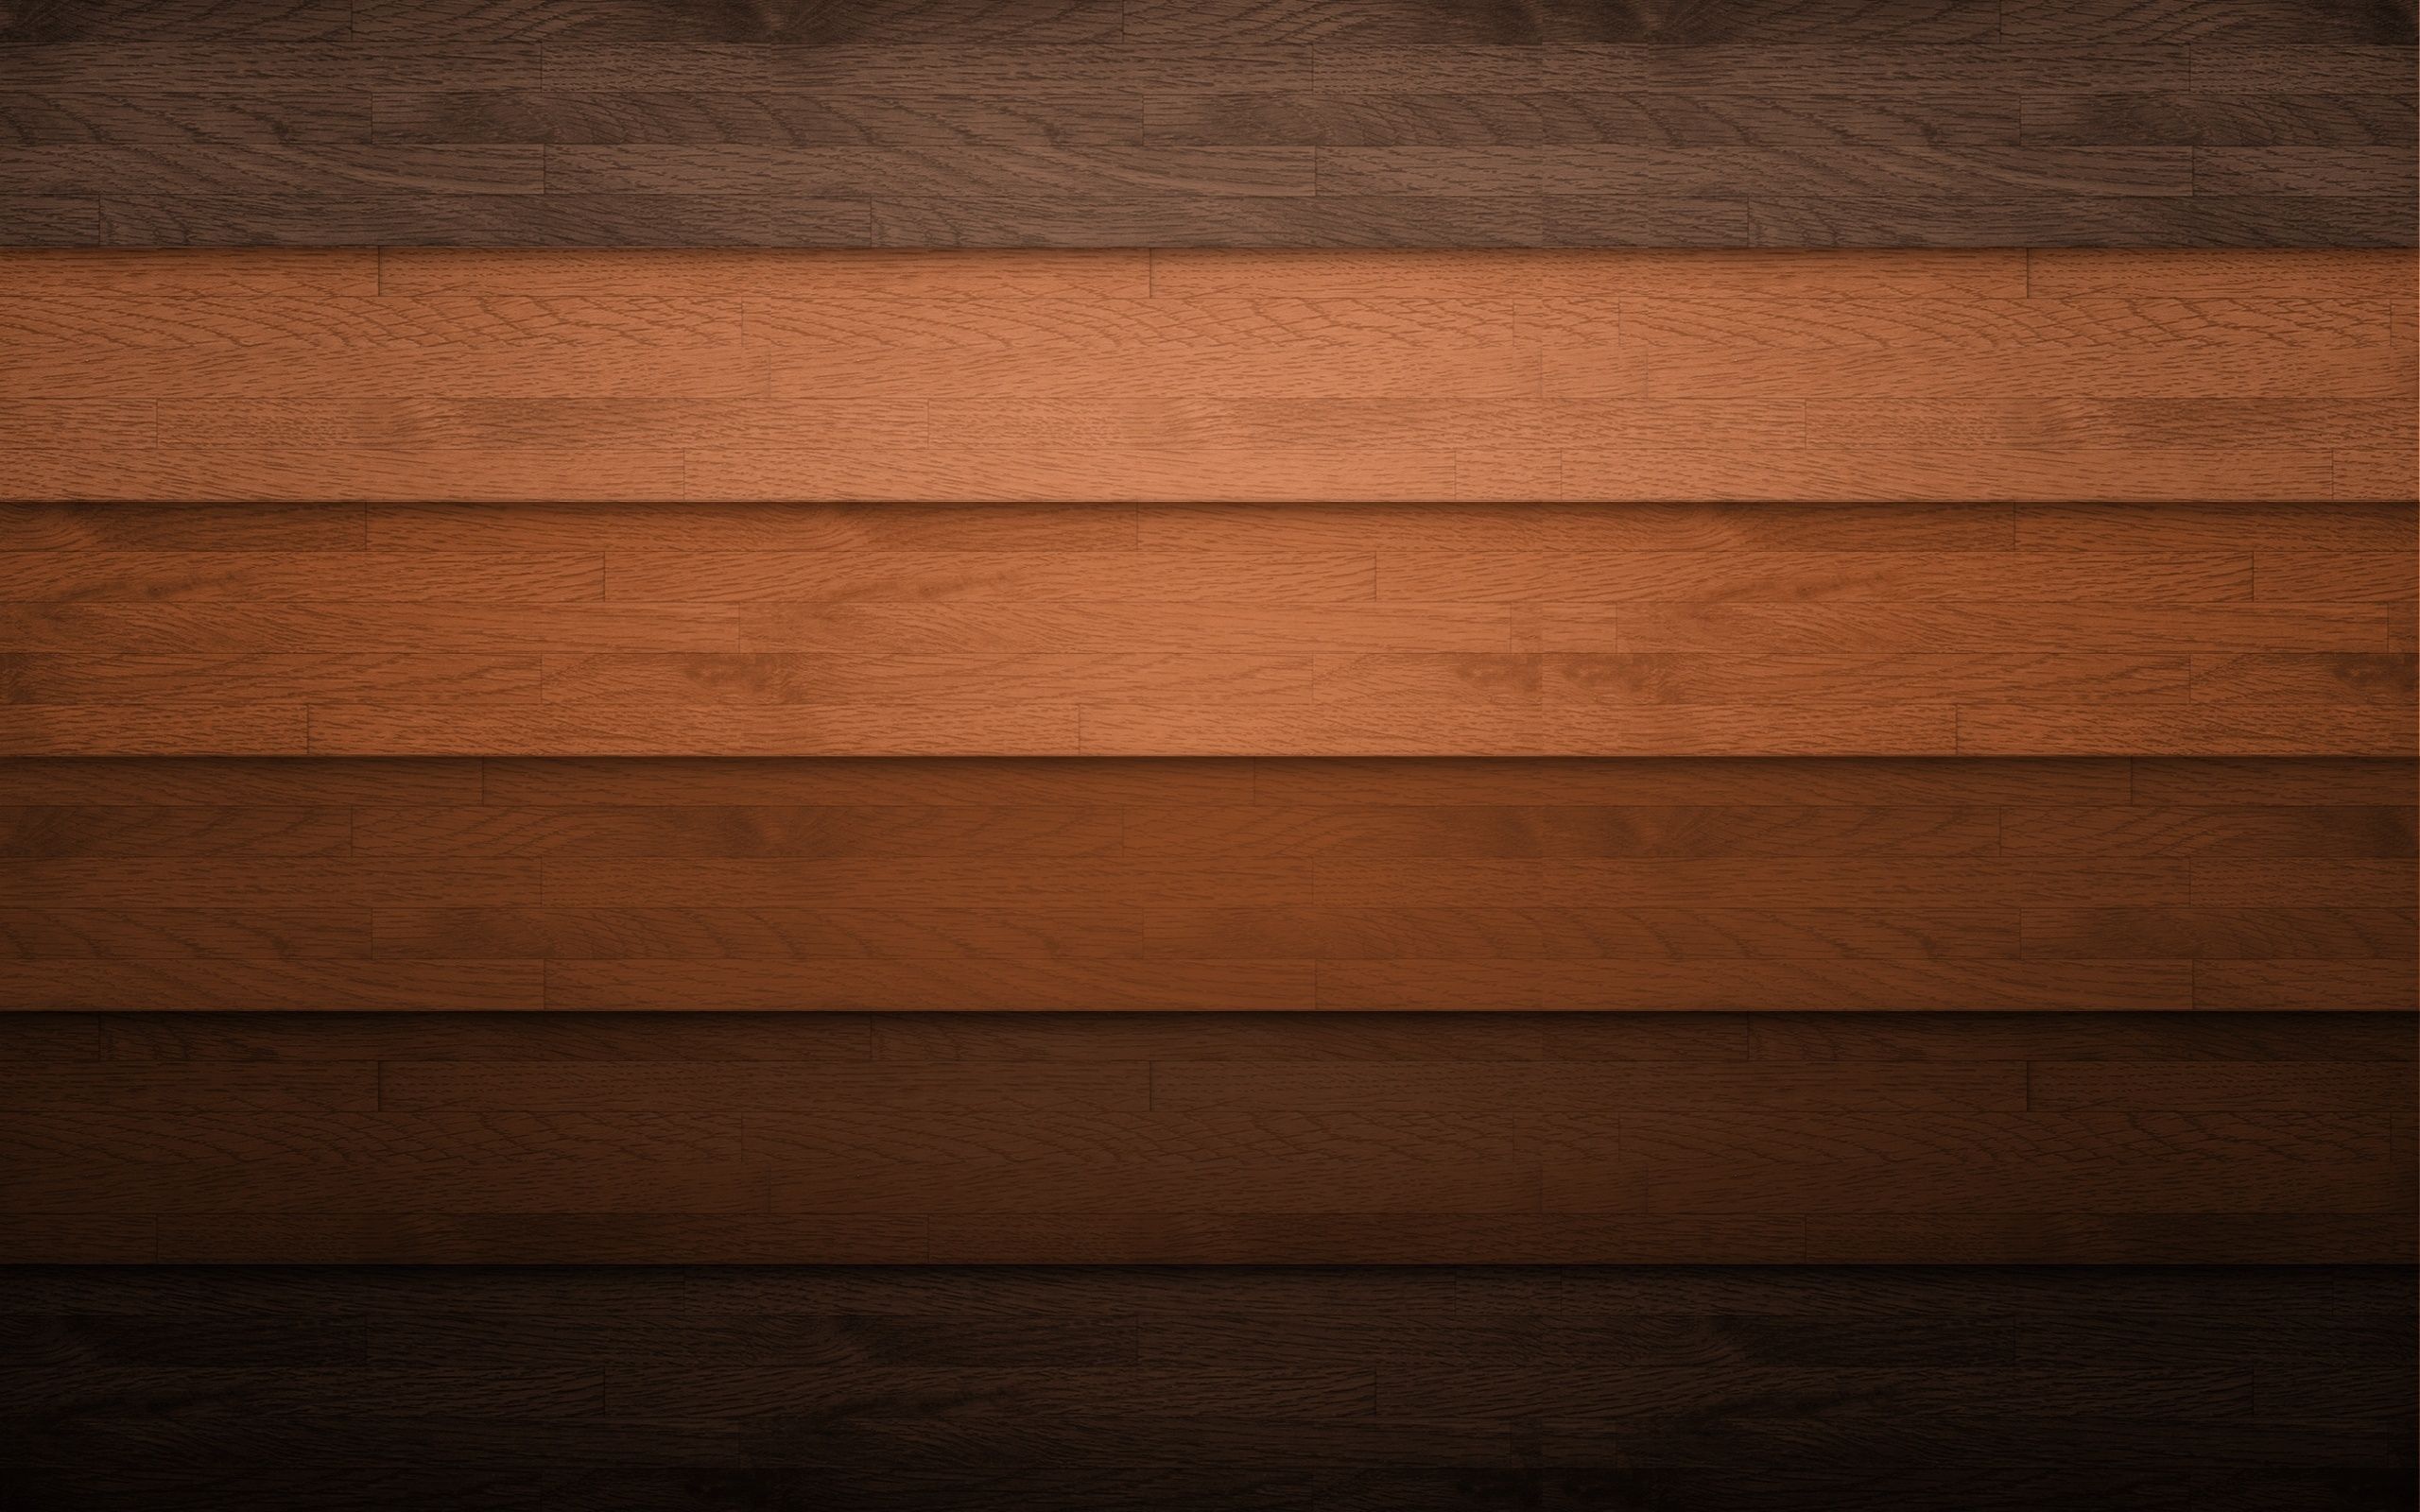  Planke Hintergrundbild 2560x1600. Kostenlose Hintergrundbilder Braune Holzoberfläche Mit Grauem Textil, Bilder Für Ihren Desktop Und Fotos